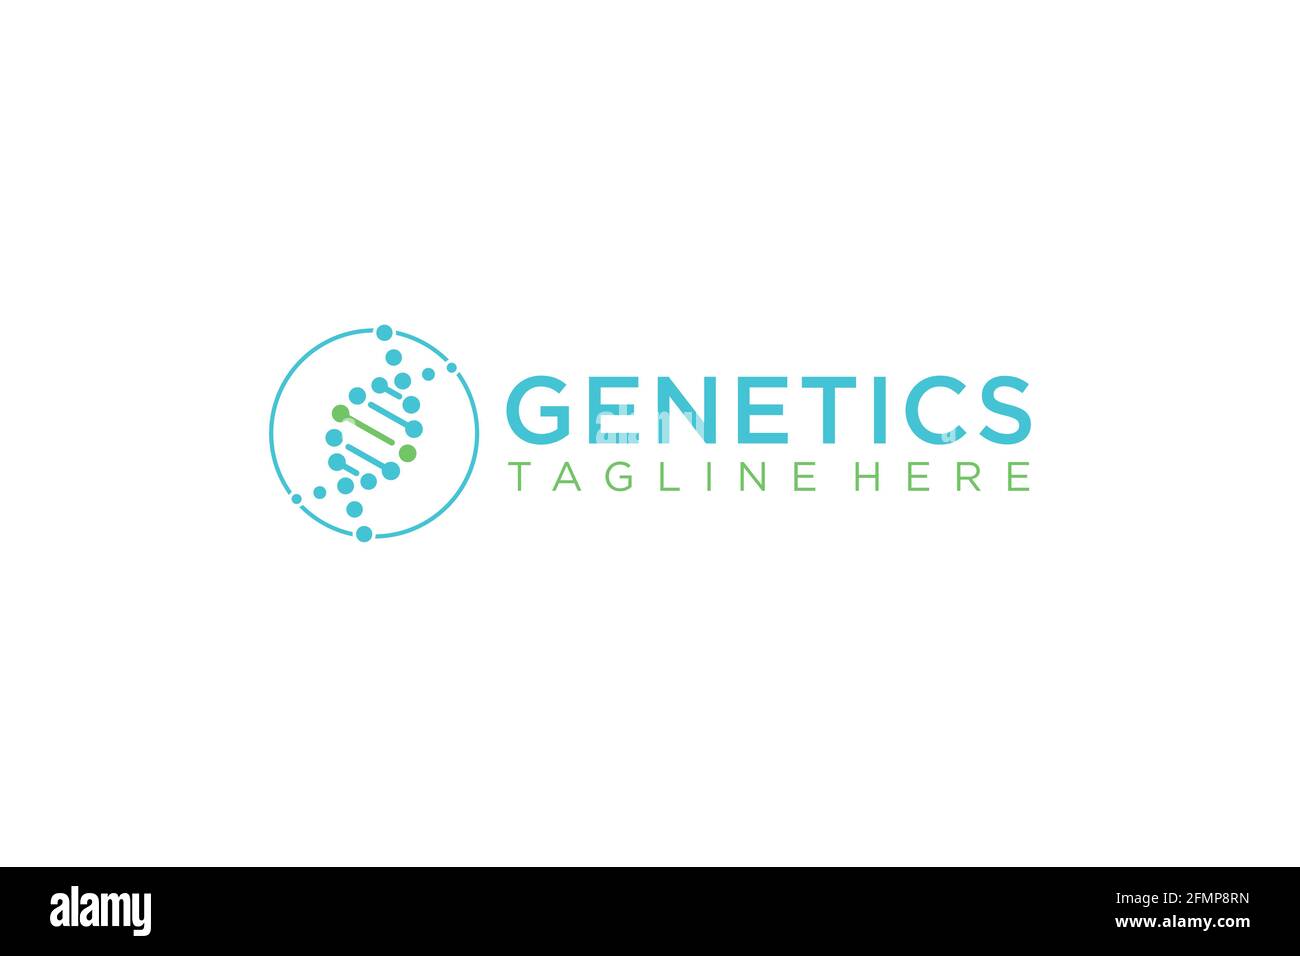 DNA Helix Logo Template. Genetics Vector Design. Biological. Stock Vector